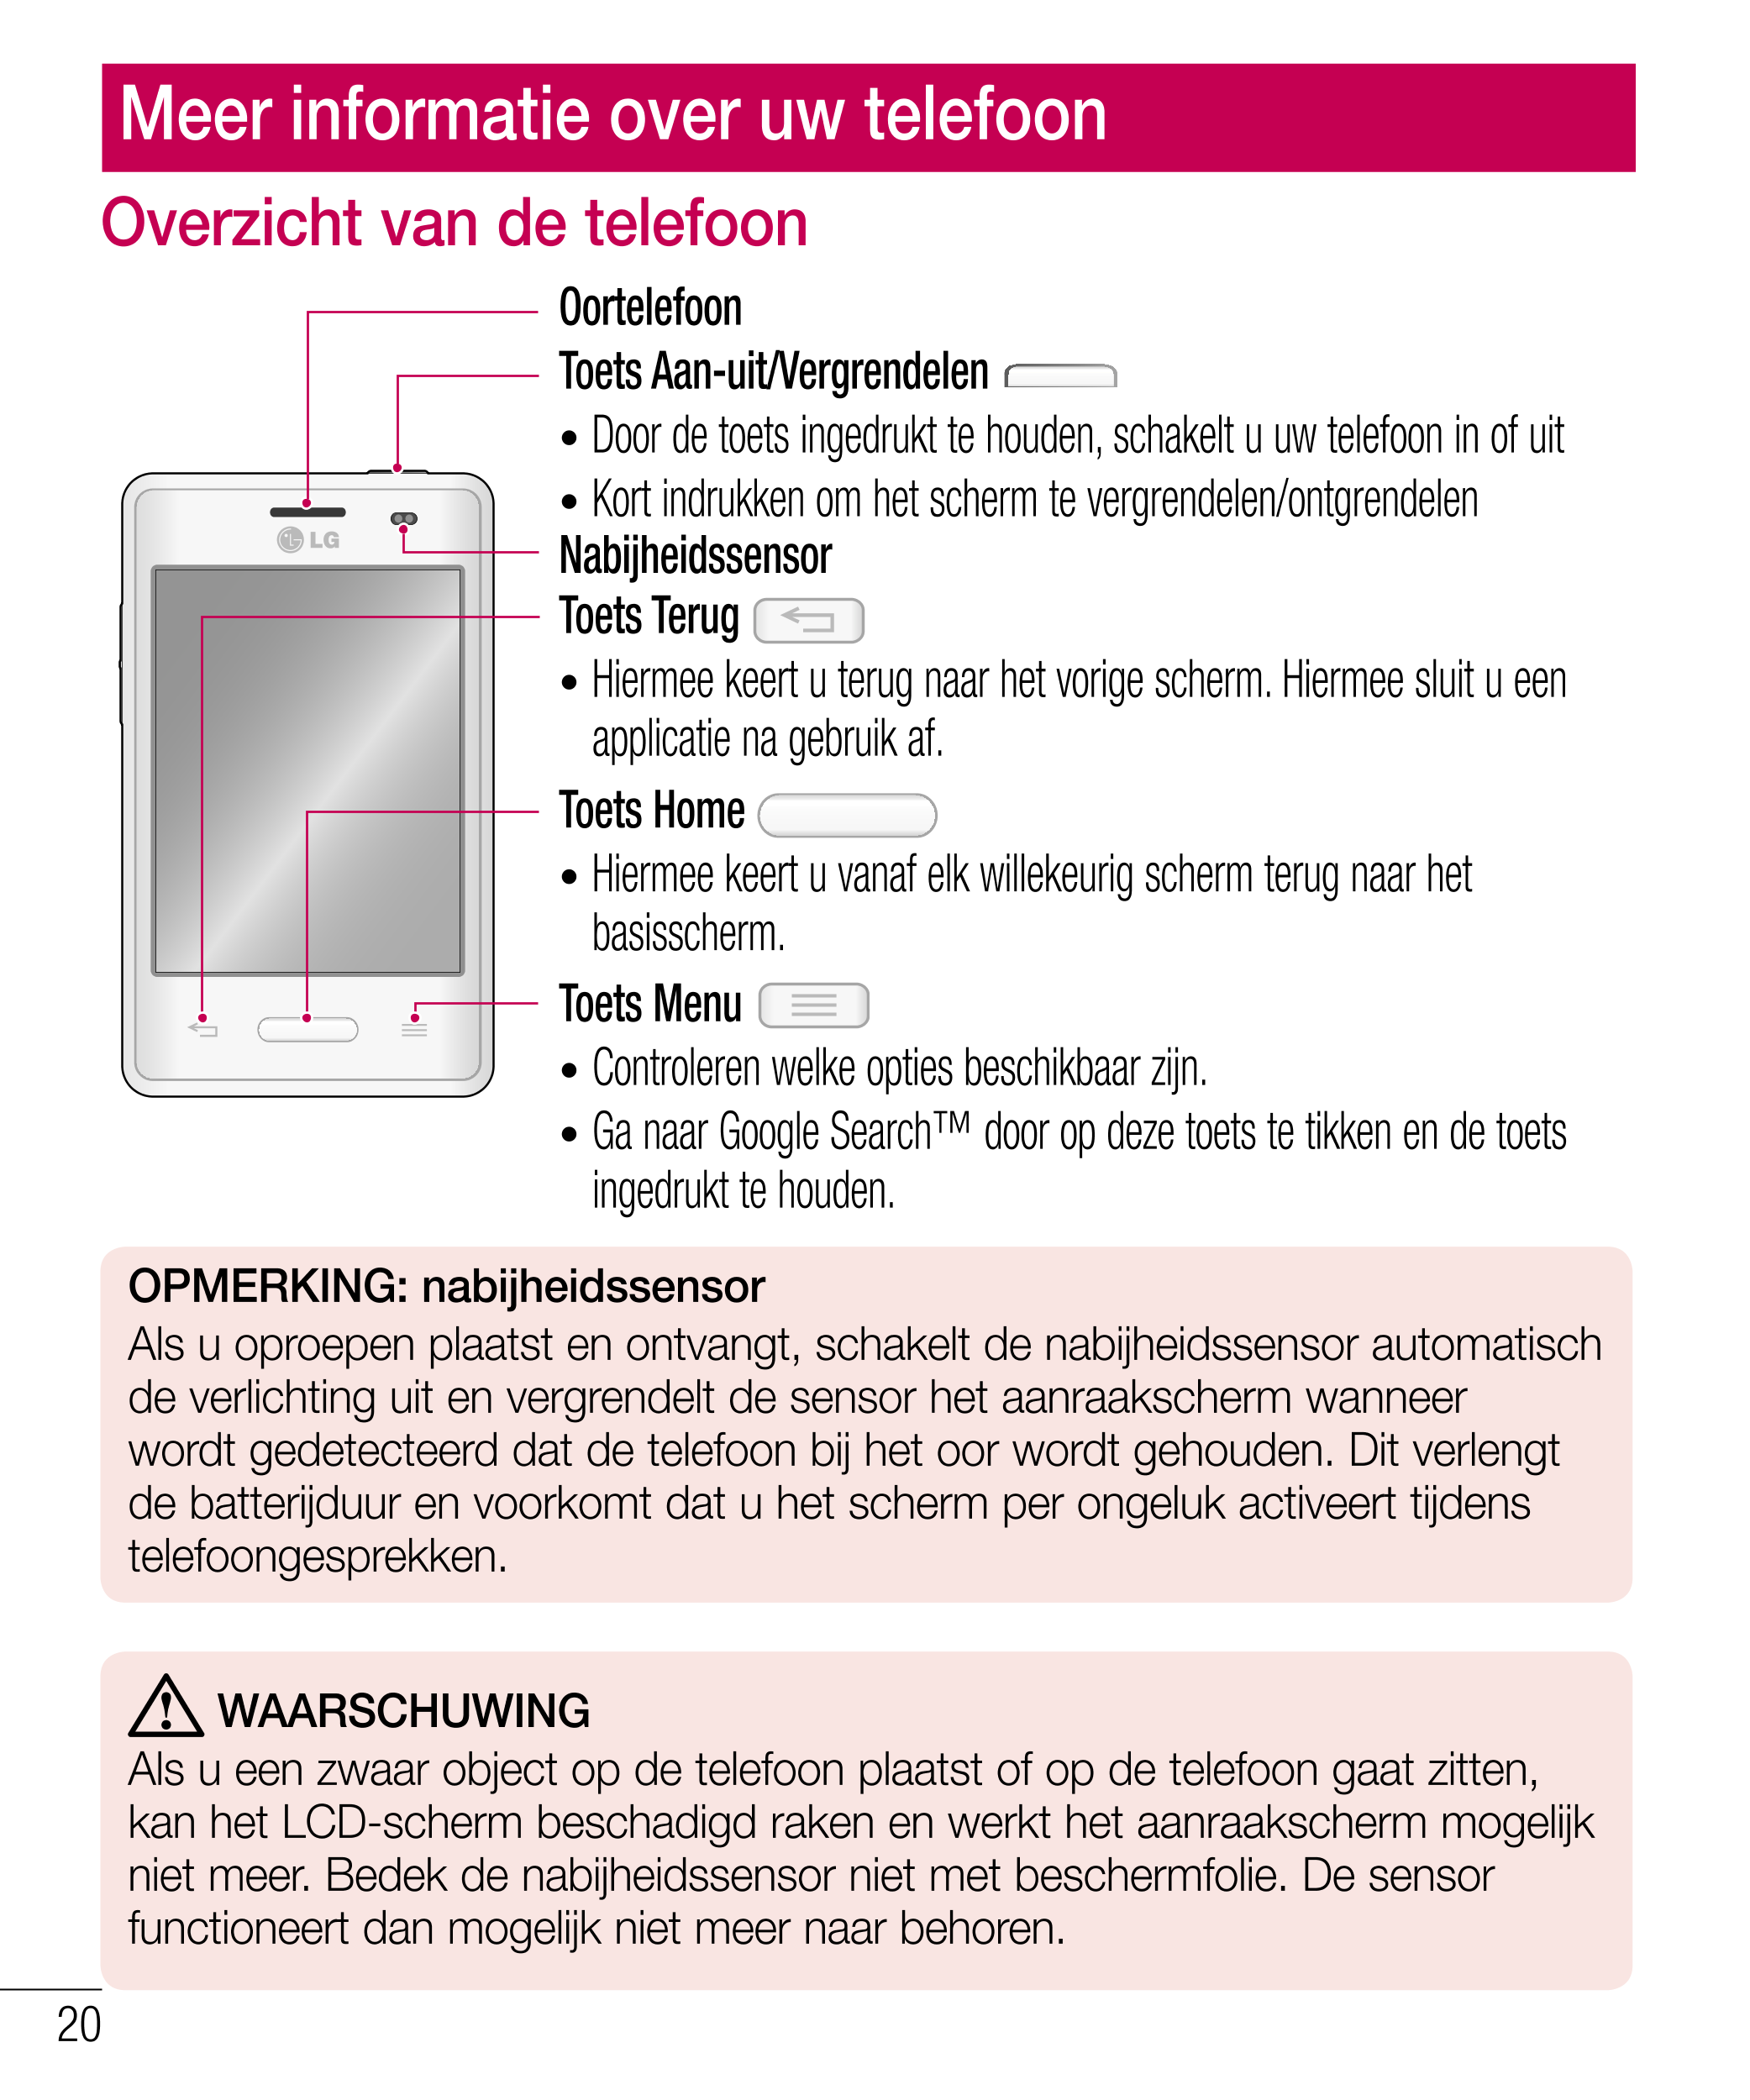 Meer informatie over uw telefoon  
Overzicht van de telefoon
WAARSCHUWING
Oortelefoon In de luidsprekermodus (handsfree-modus) k